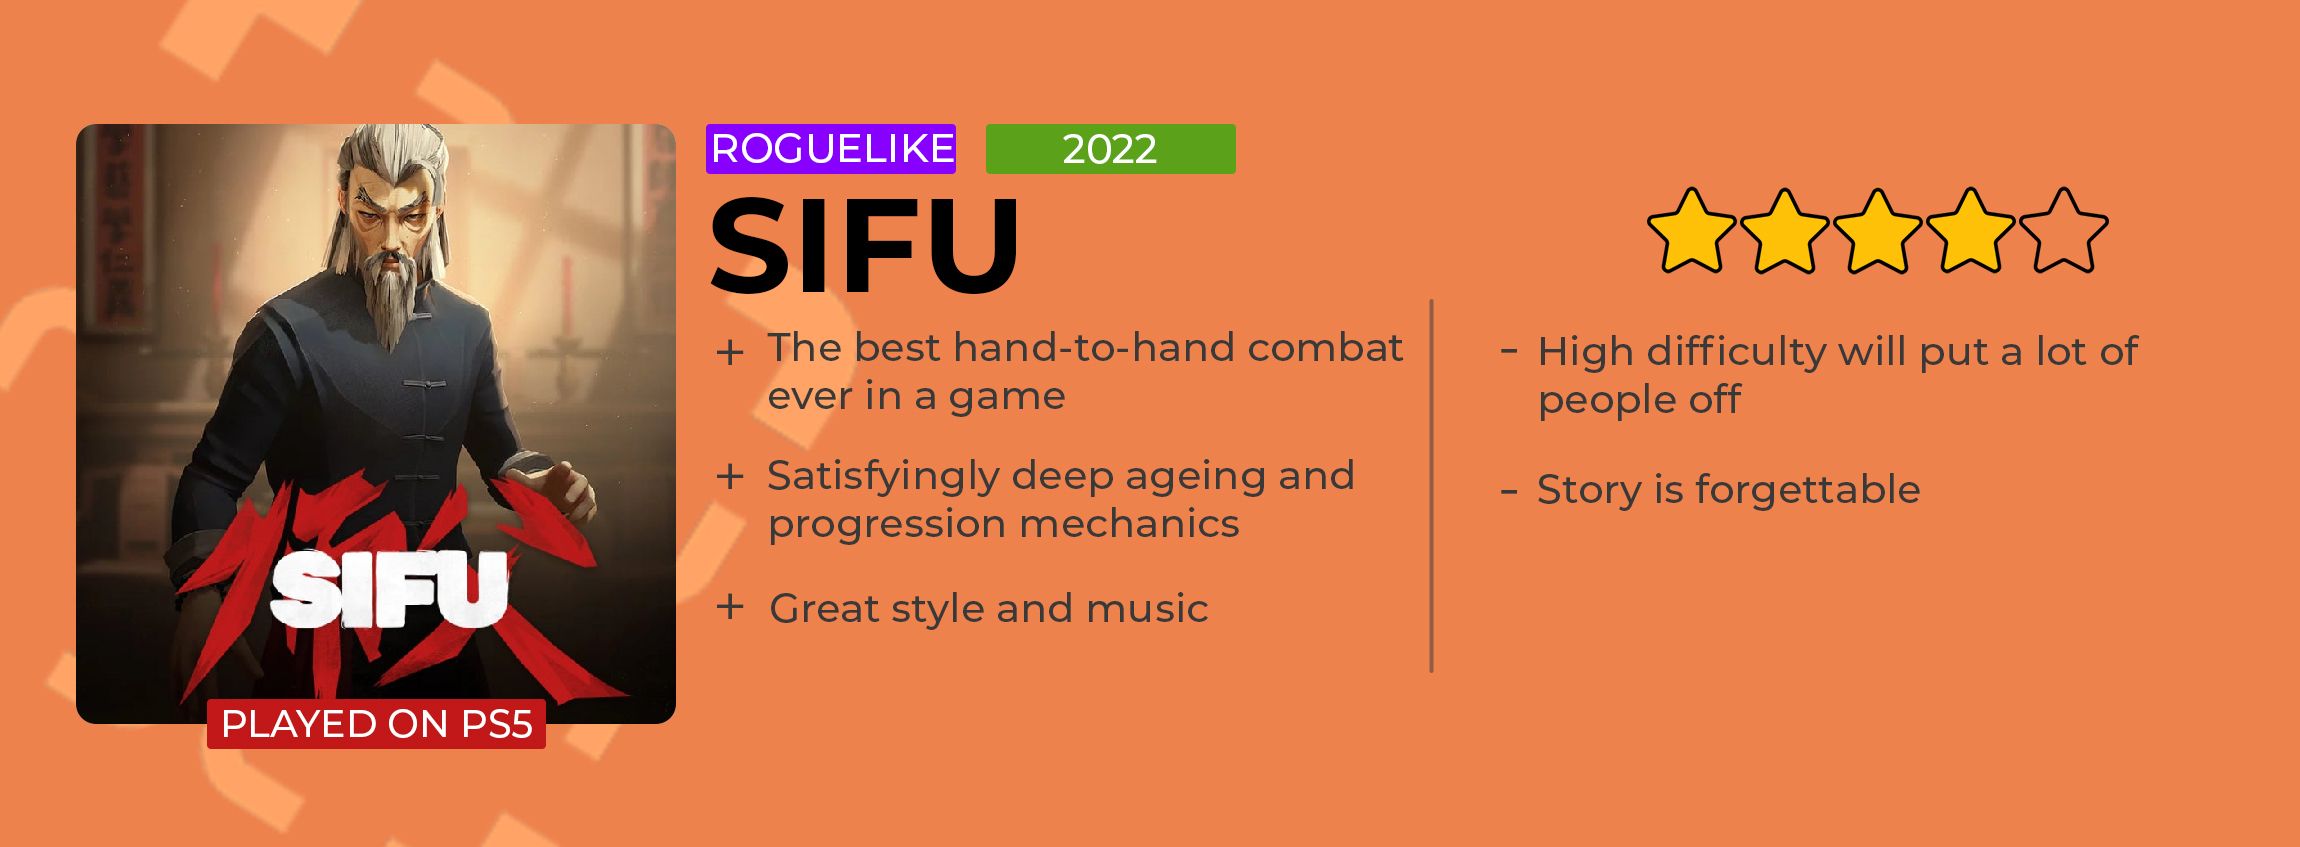 Sifu review card